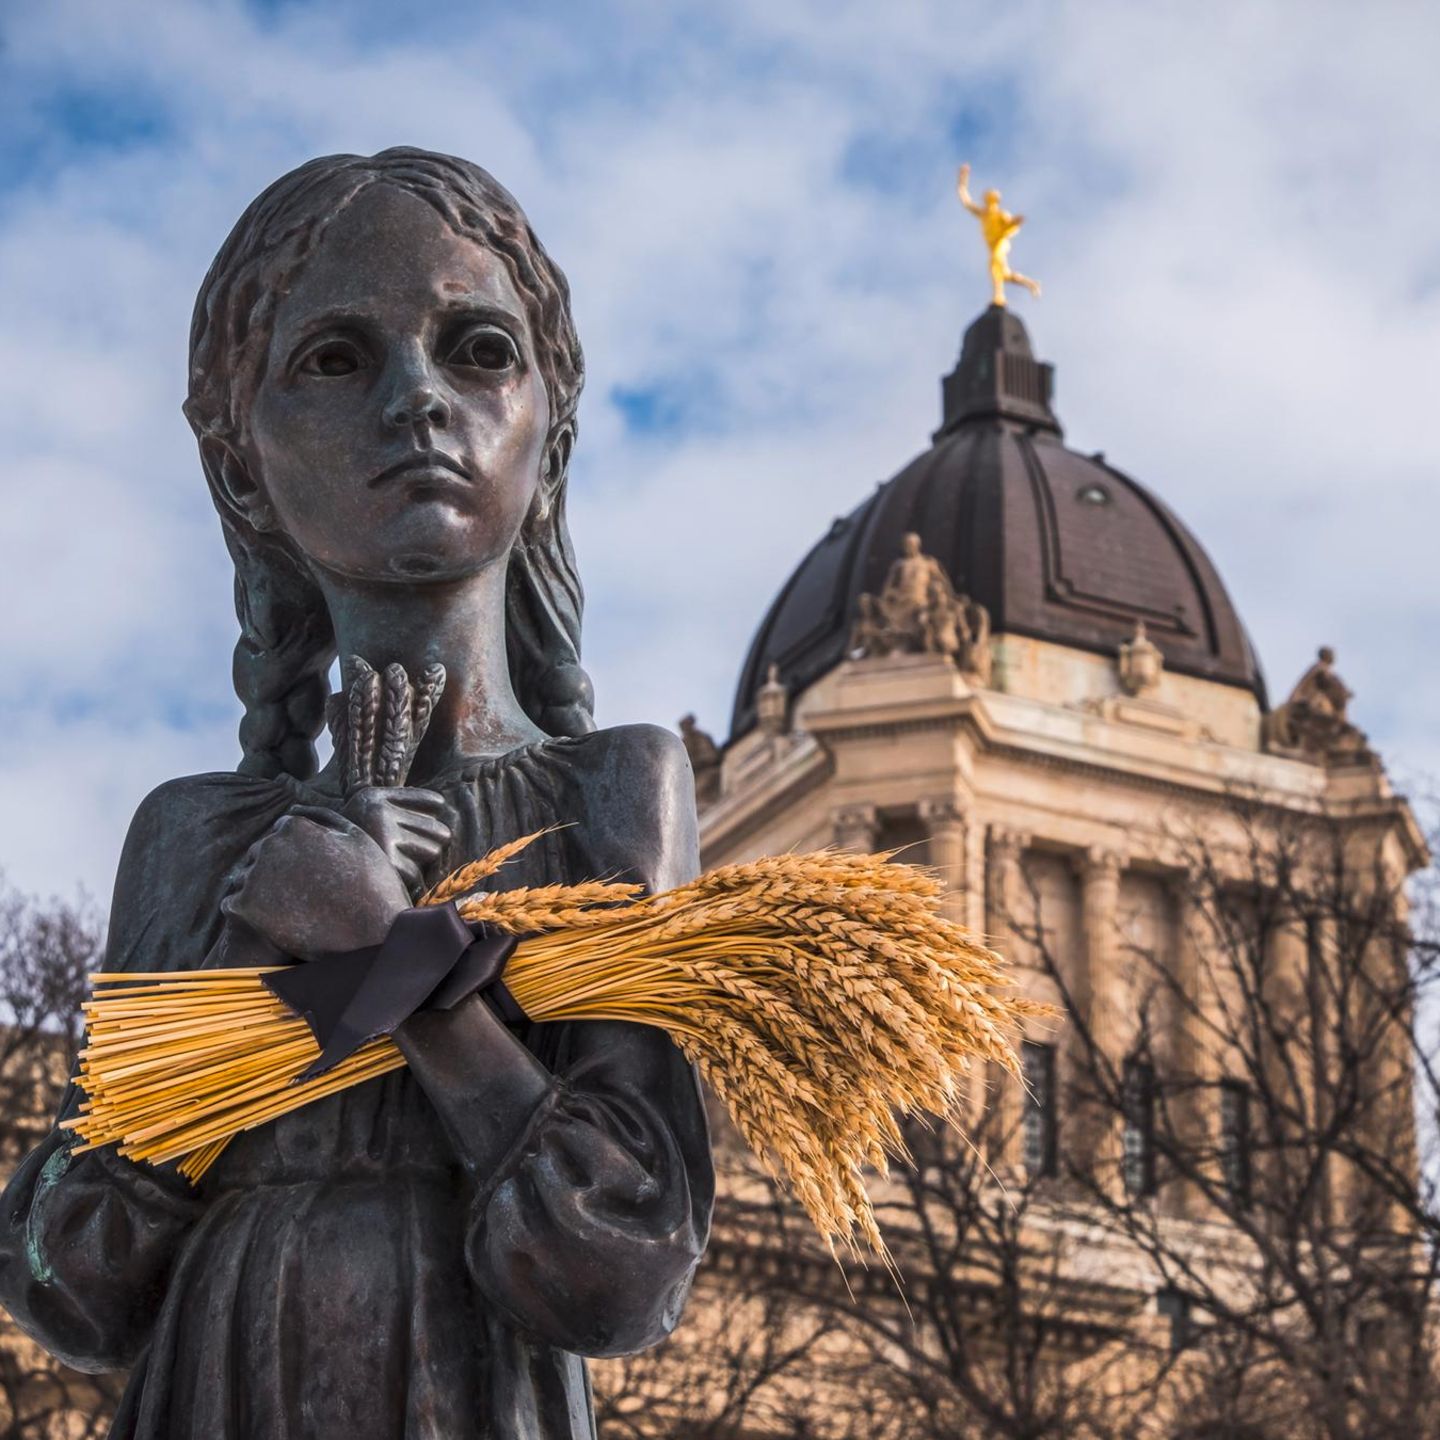 Viele Überlebende der Hungersnot wanderten aus, etwa nach Kanada. In der Stadt Winnipeg erinnert ein Mahnmal an die Opfer 